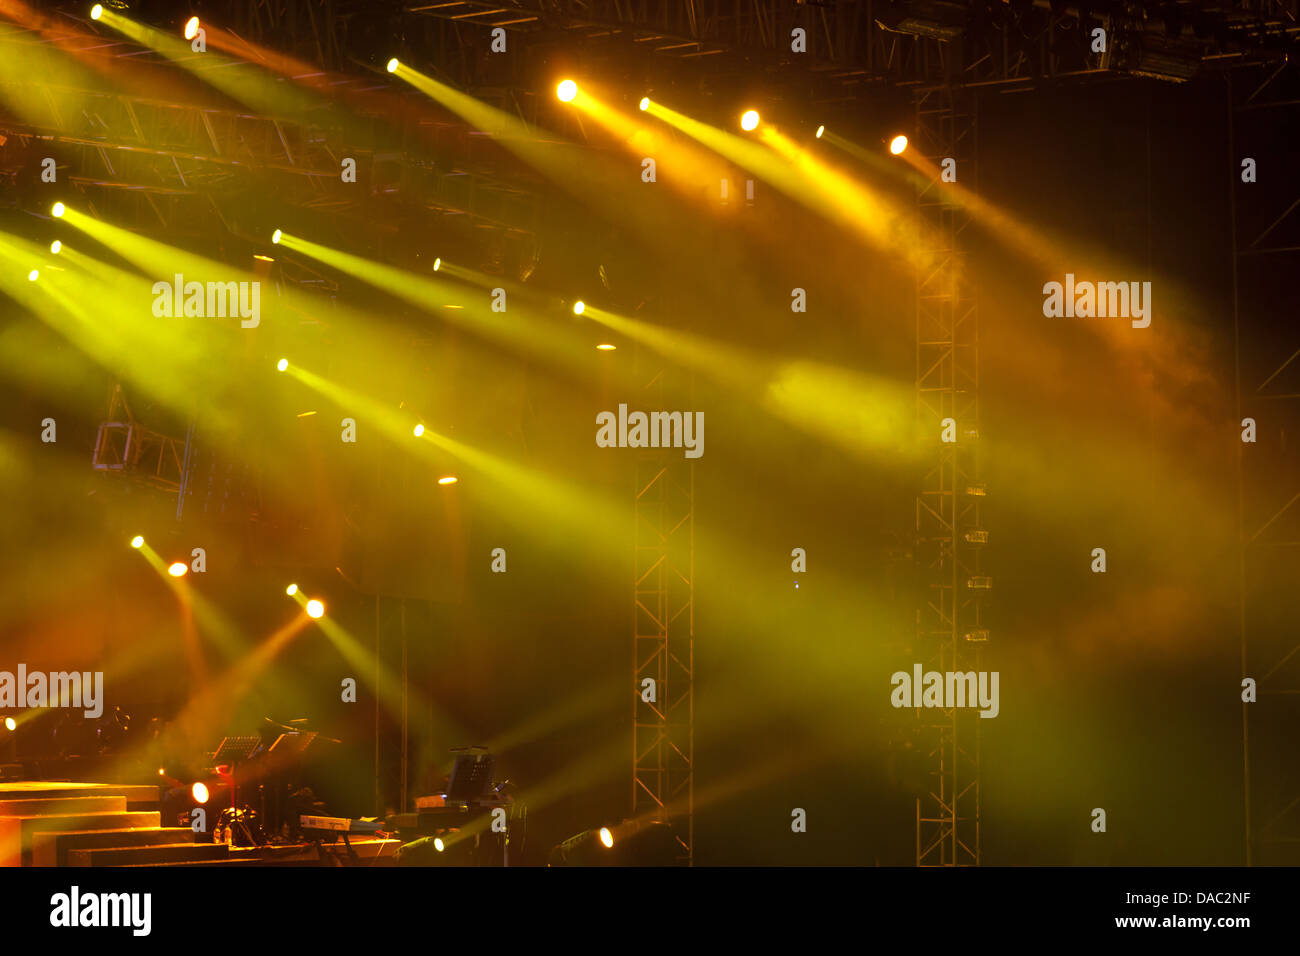 Immagine della fase di giallo luci, nebbia spessa crea il dramma Foto Stock